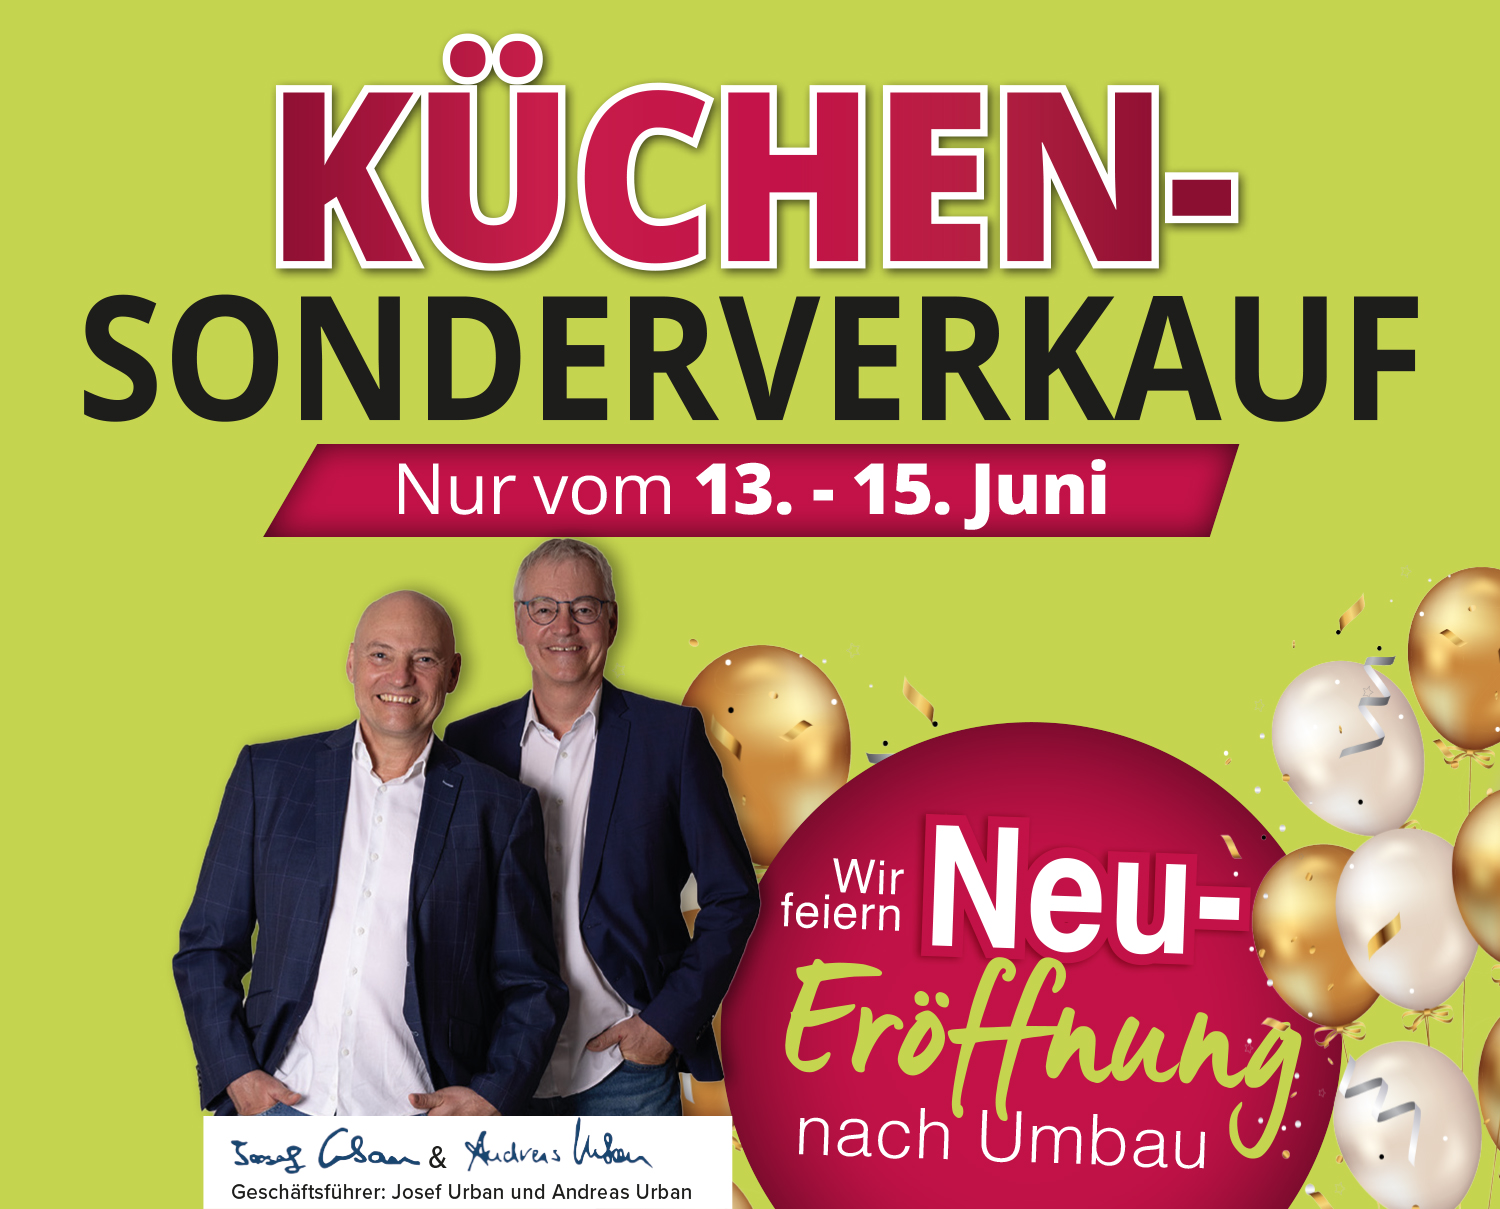 Küchen-Sonderverkauf - nur vom 13. - 15. Juni bei Möbel Urban in Bad Camberg